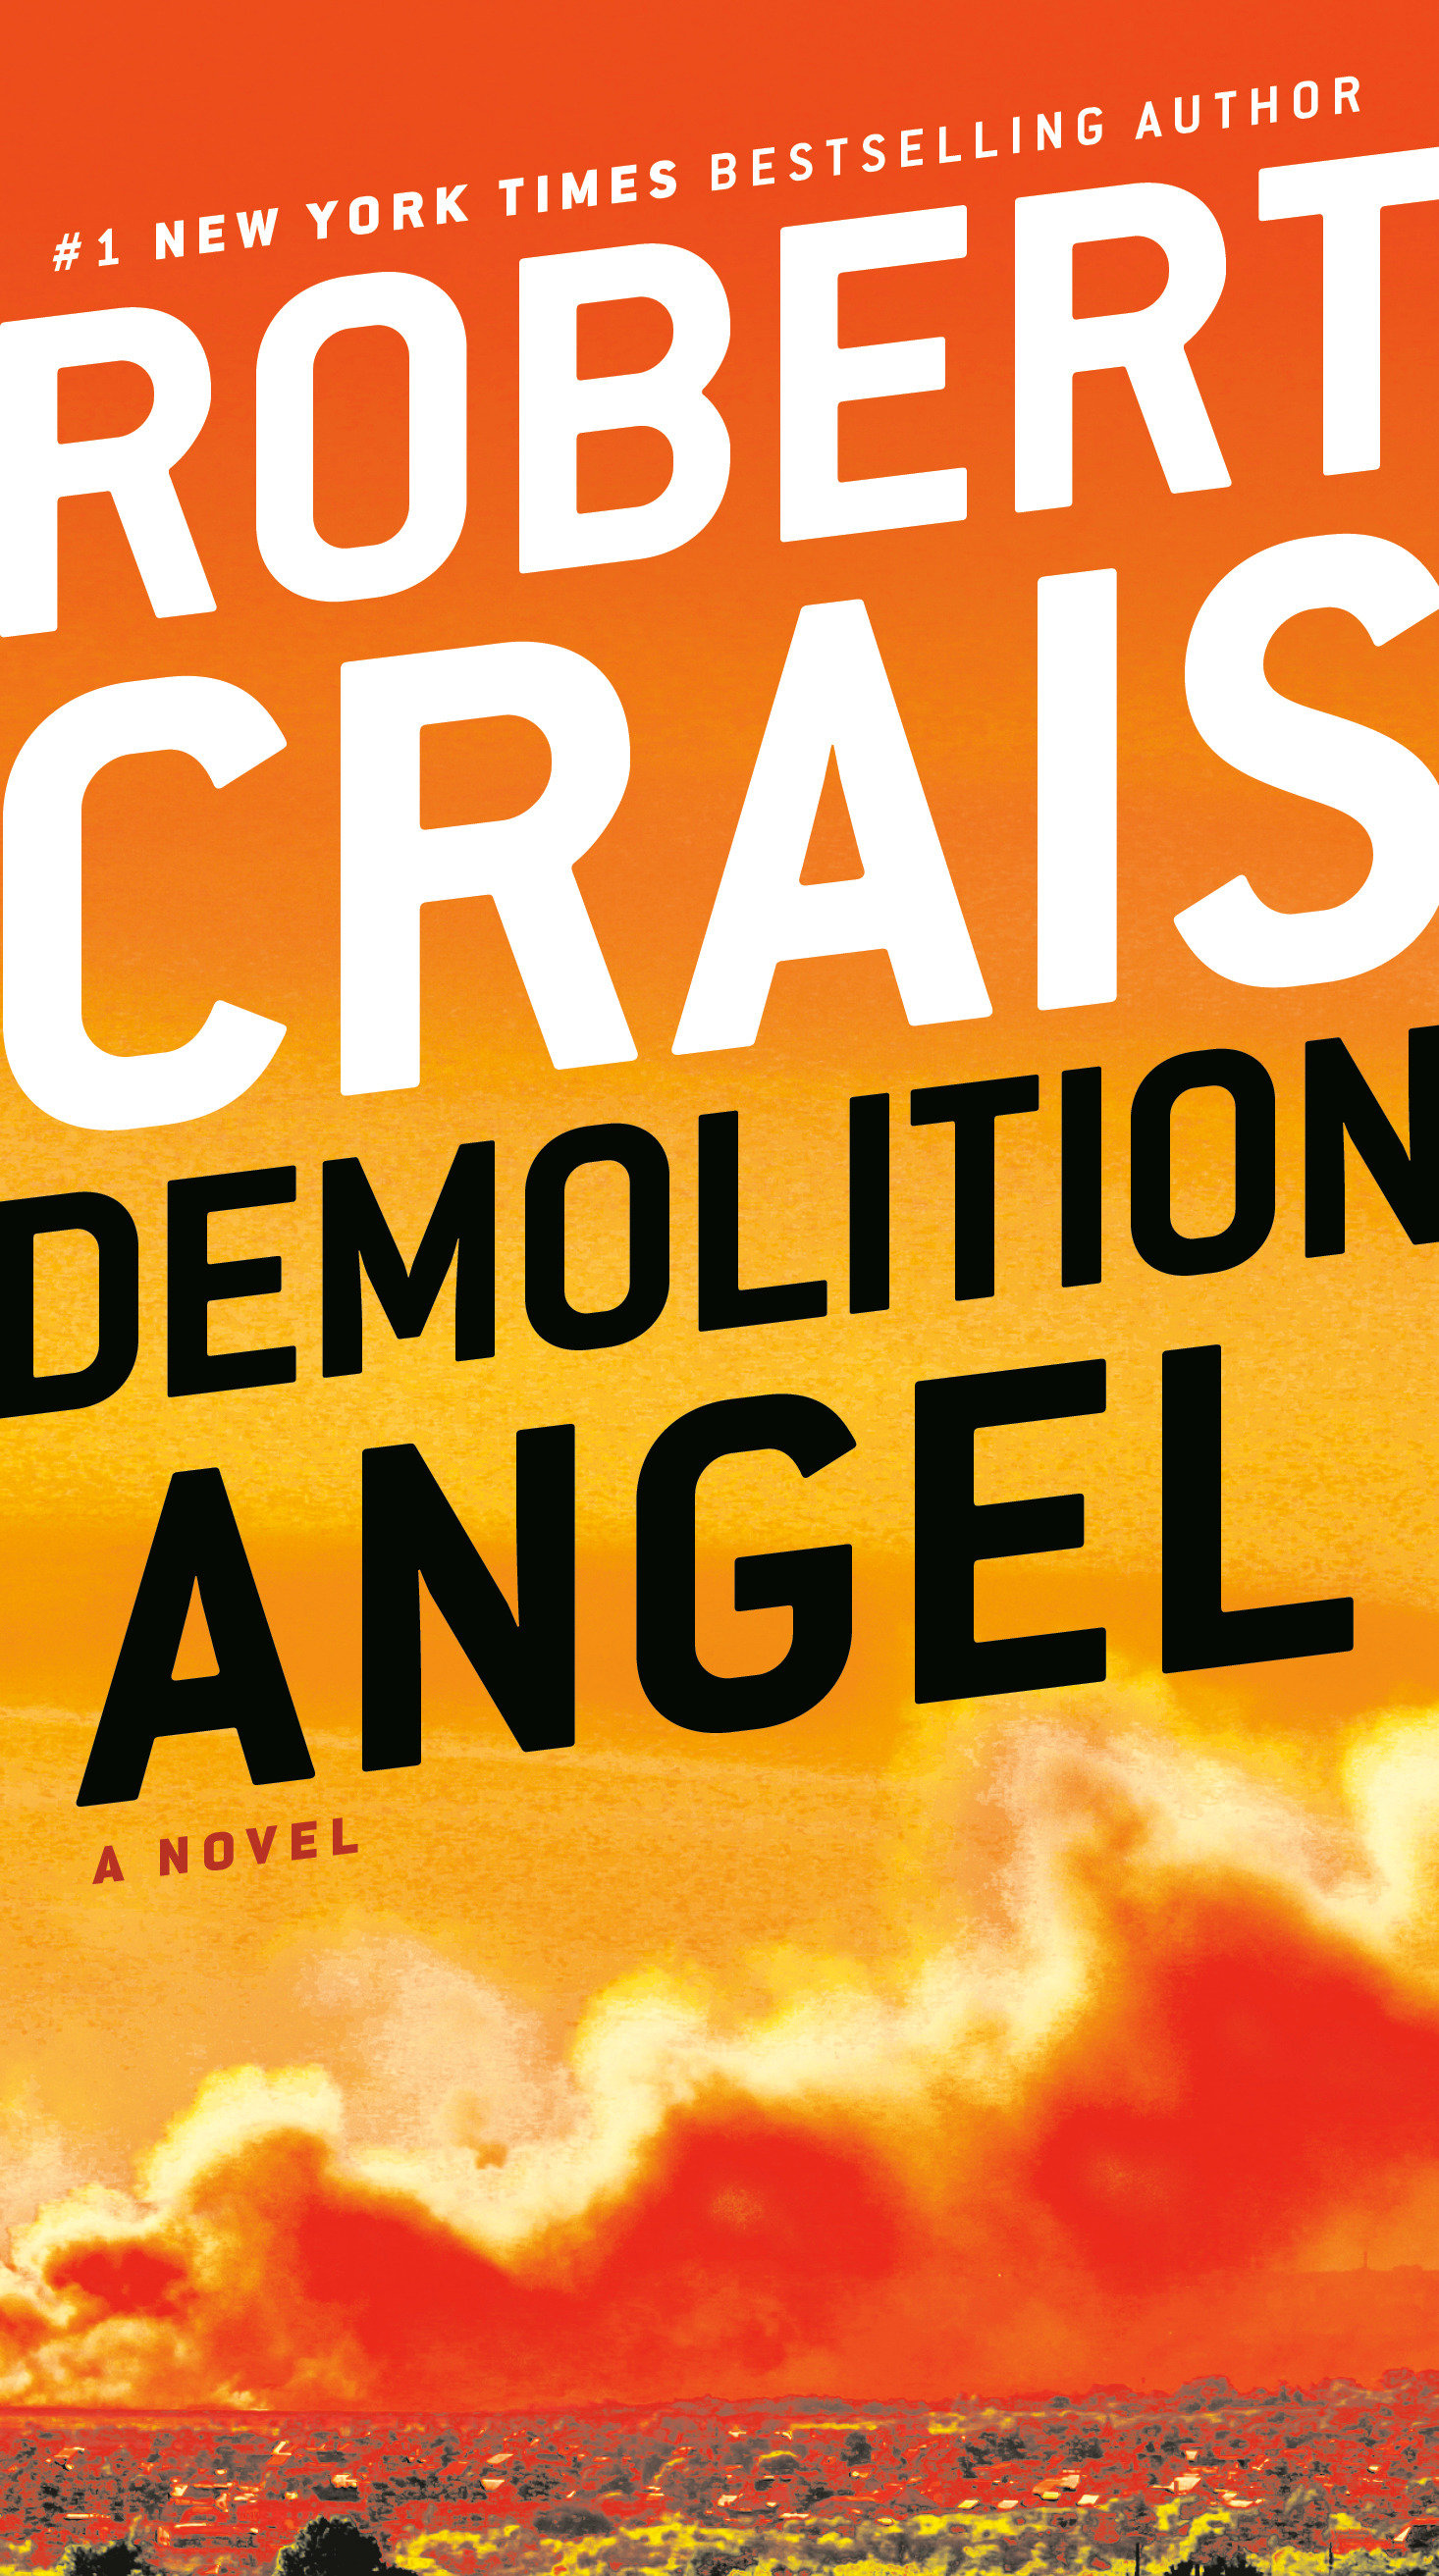 Demolition angel cover image